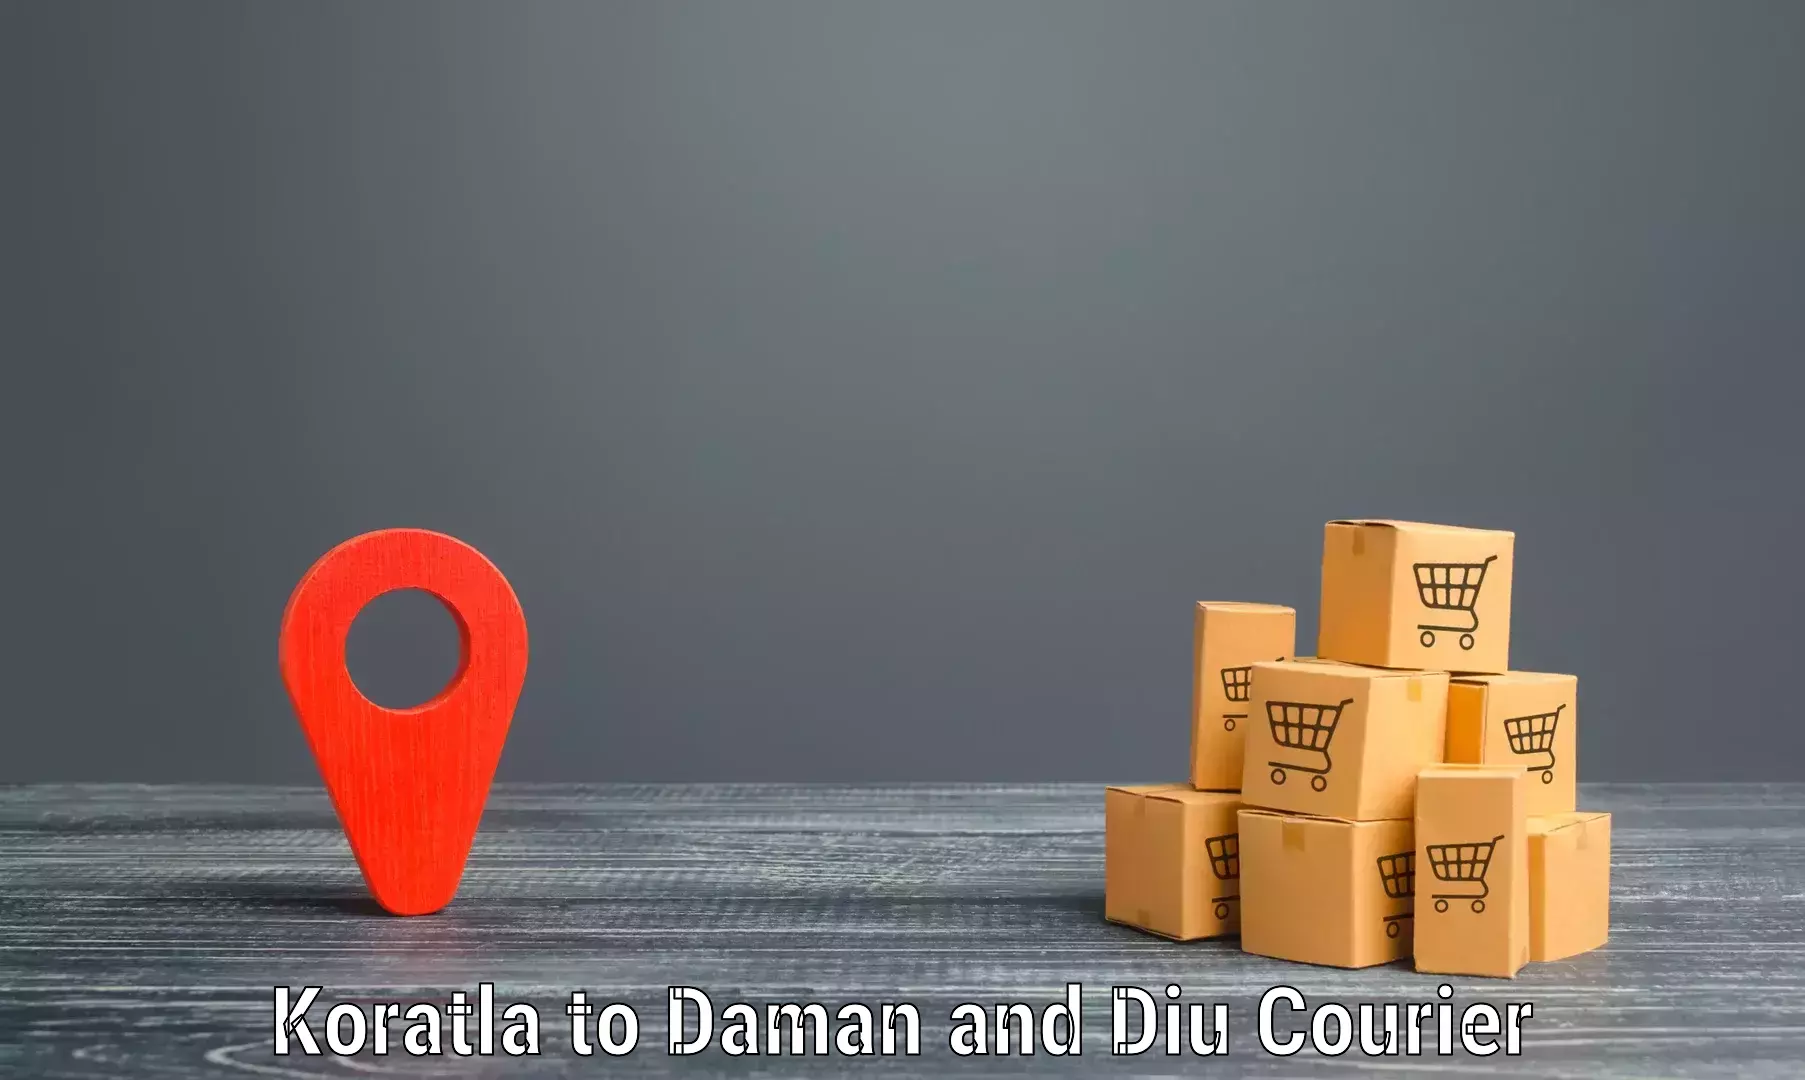 Cargo delivery service Koratla to Diu